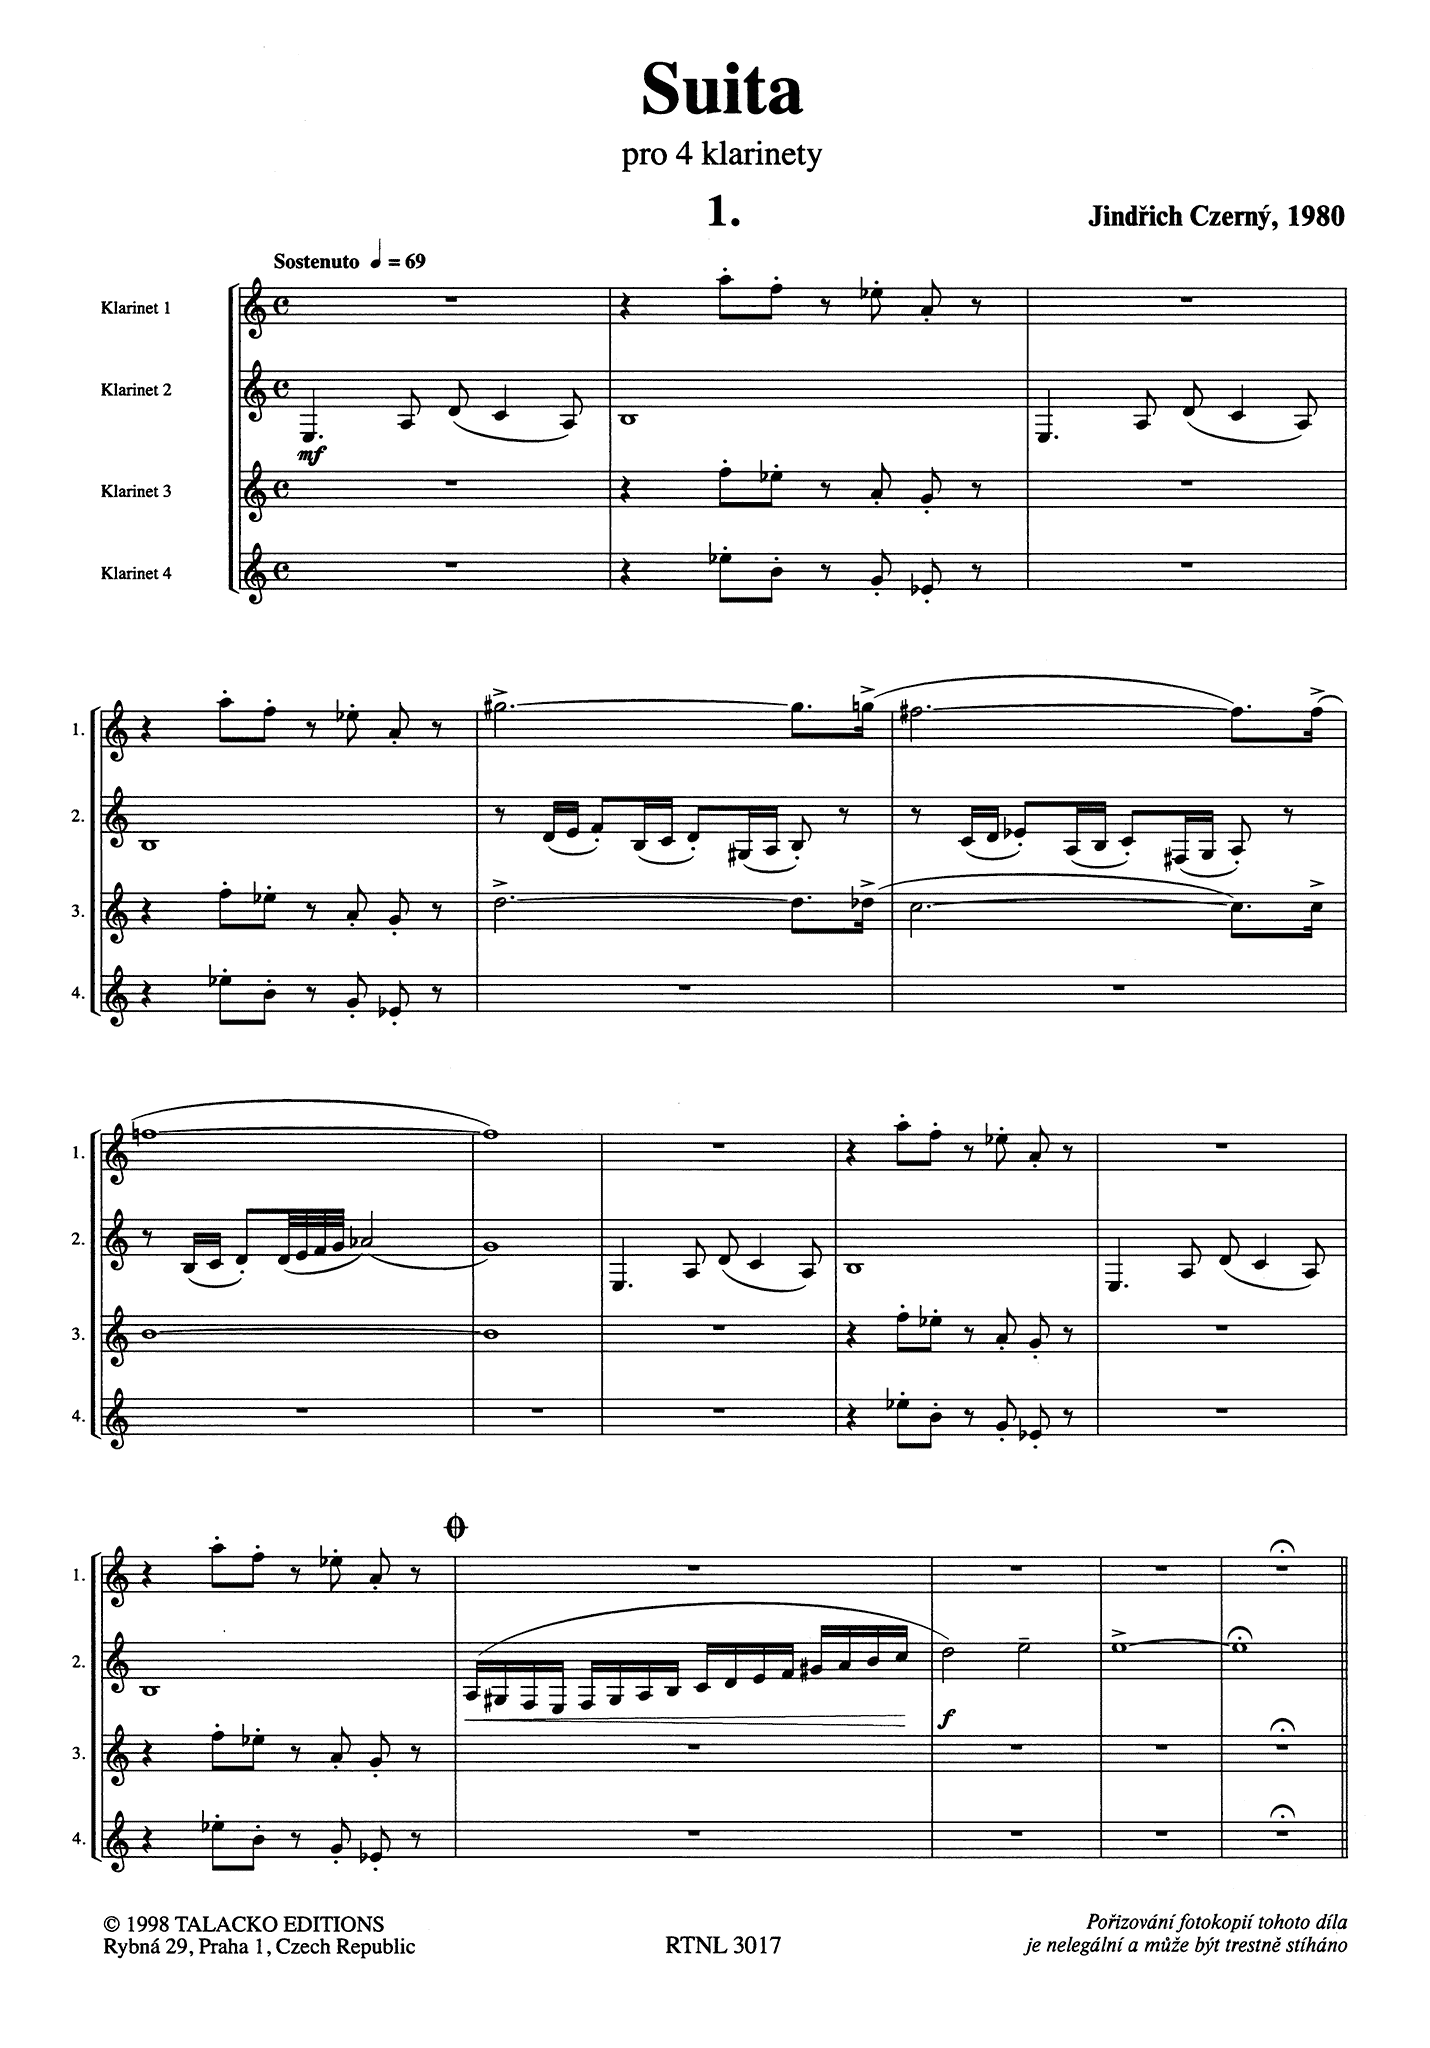 Czerný Suite Clarinet Quartet - Movement 1